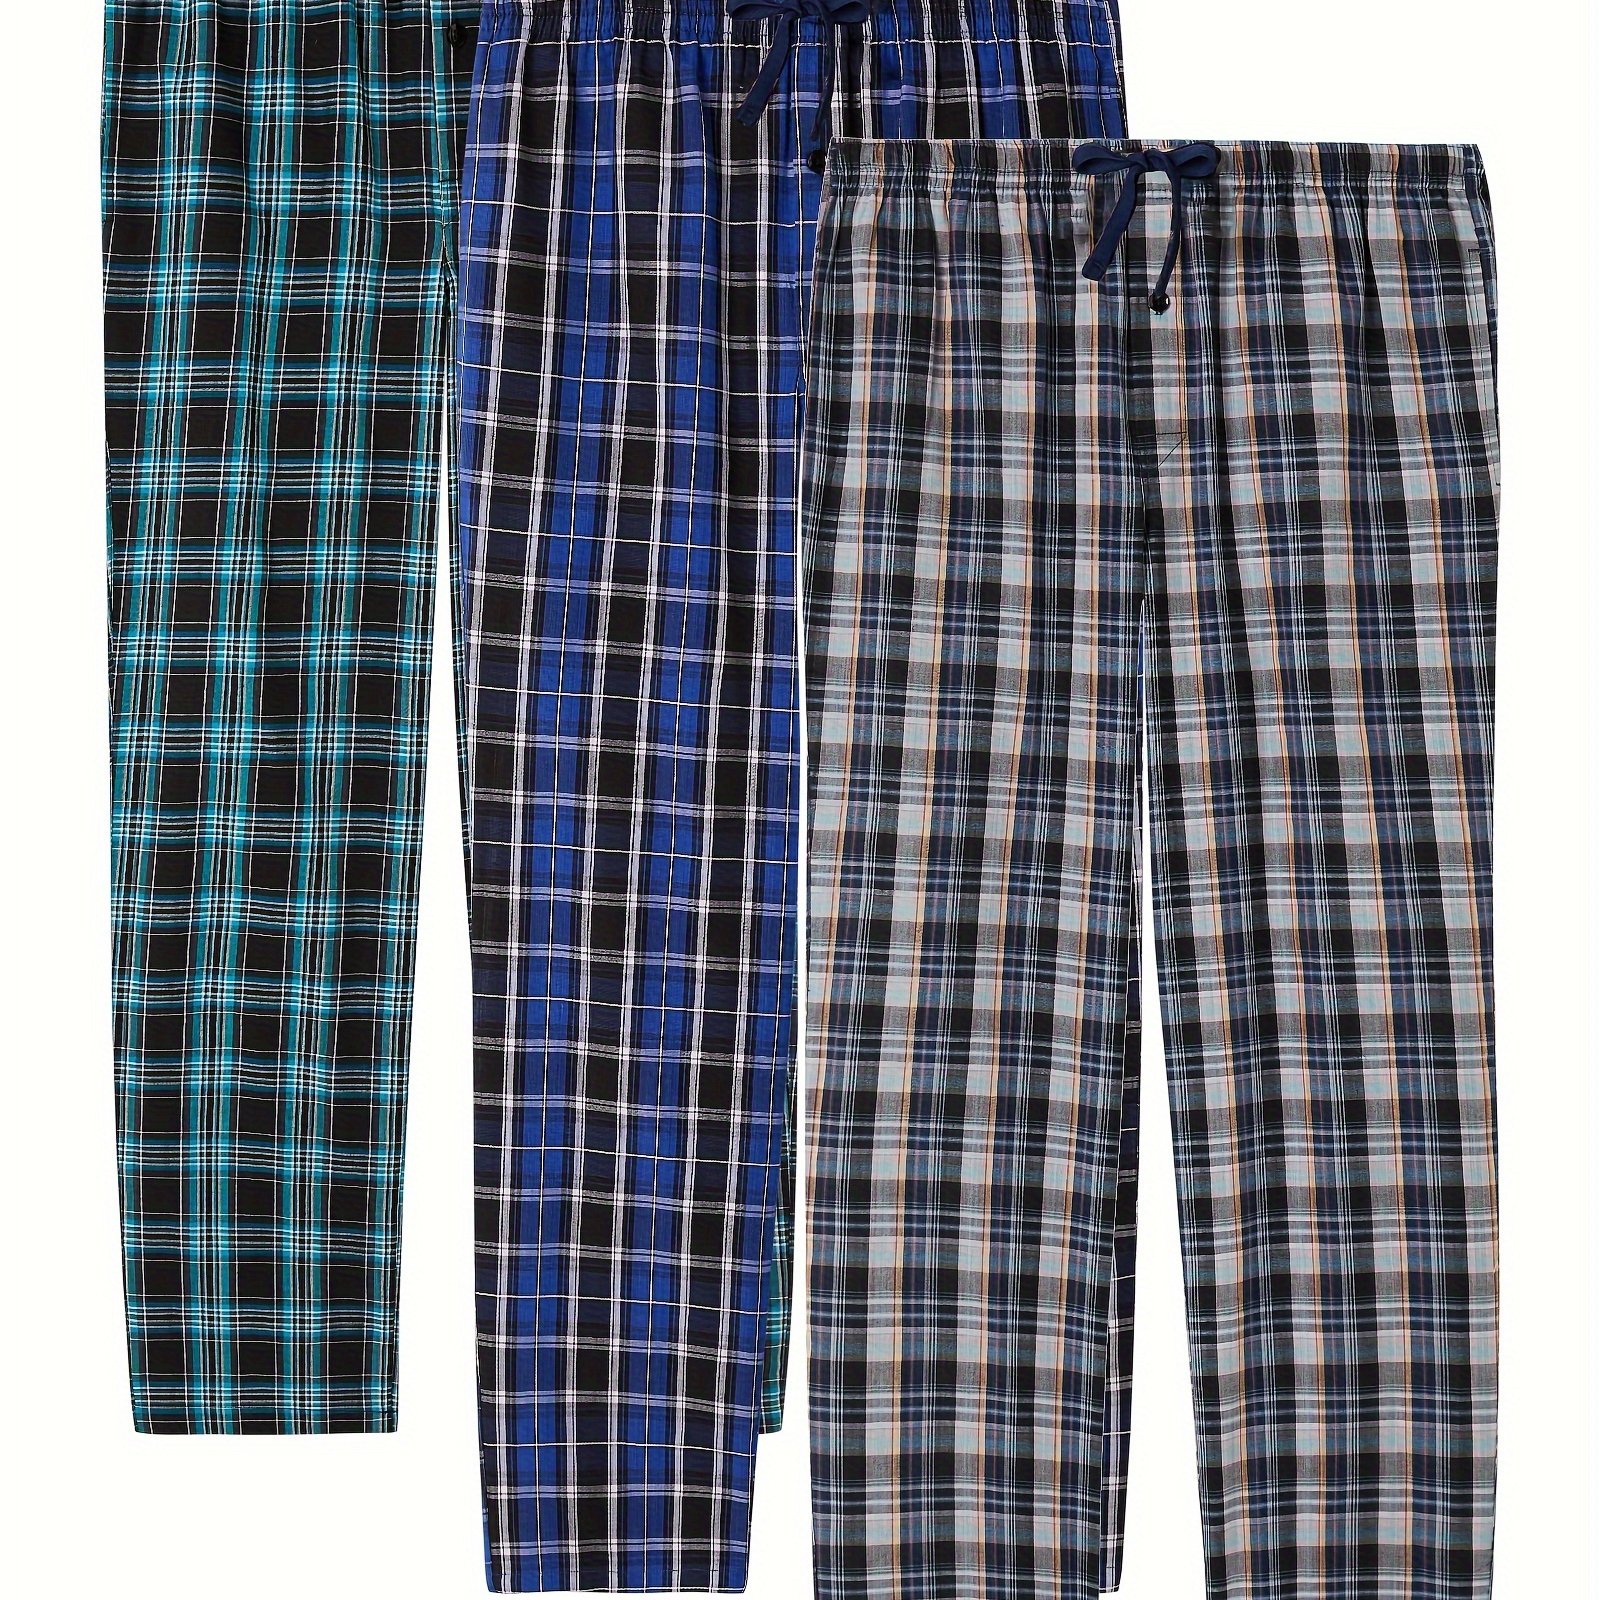 Pijama Franela Hombre Conjunto Camisa Y Pantalón color Tinto Tatys Fashion  615